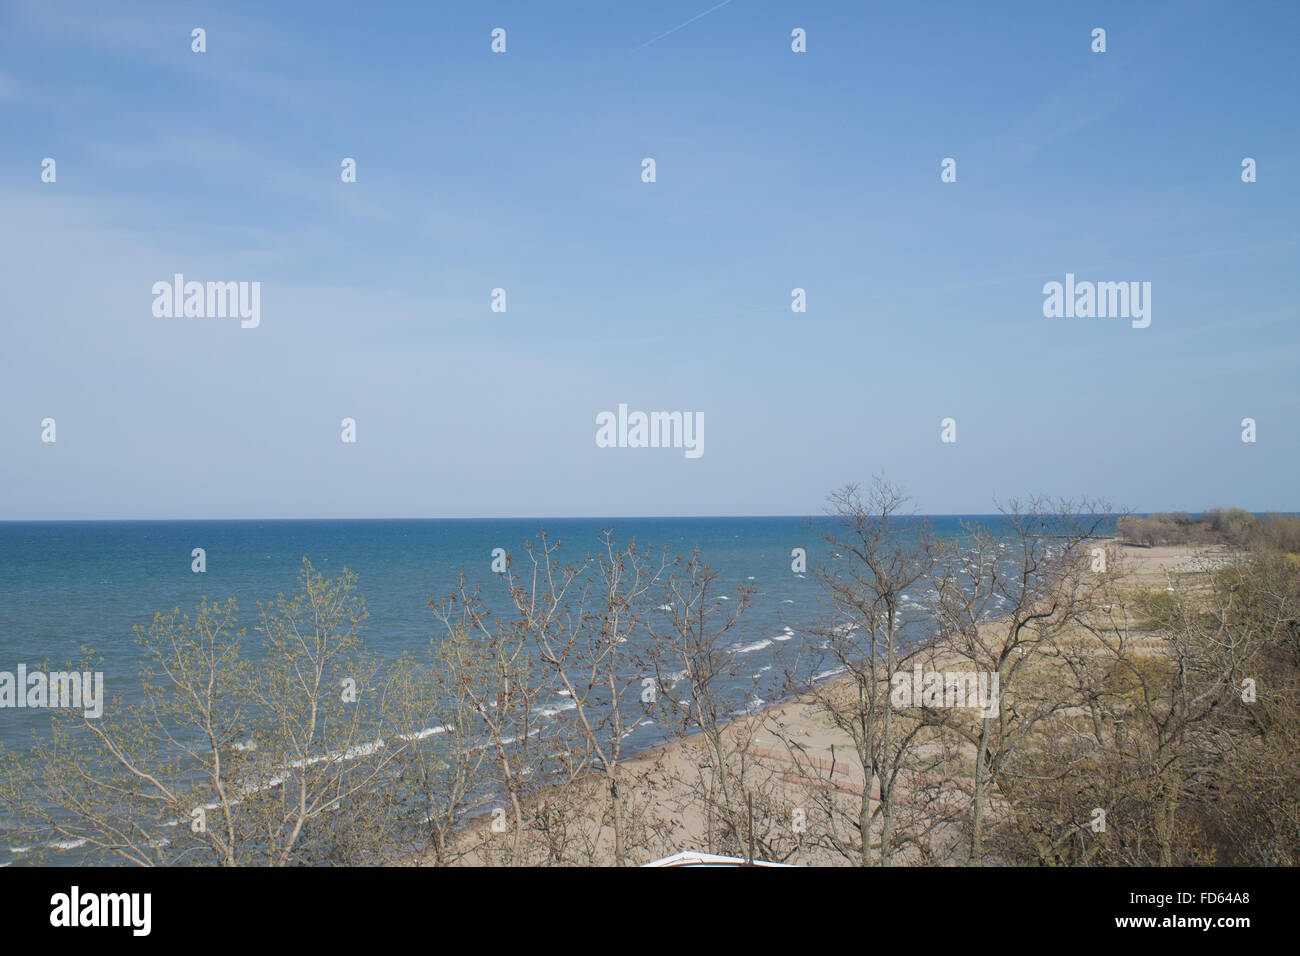 Ver elevados a lo largo de la playa de arena vacía con árboles deshojado Foto de stock